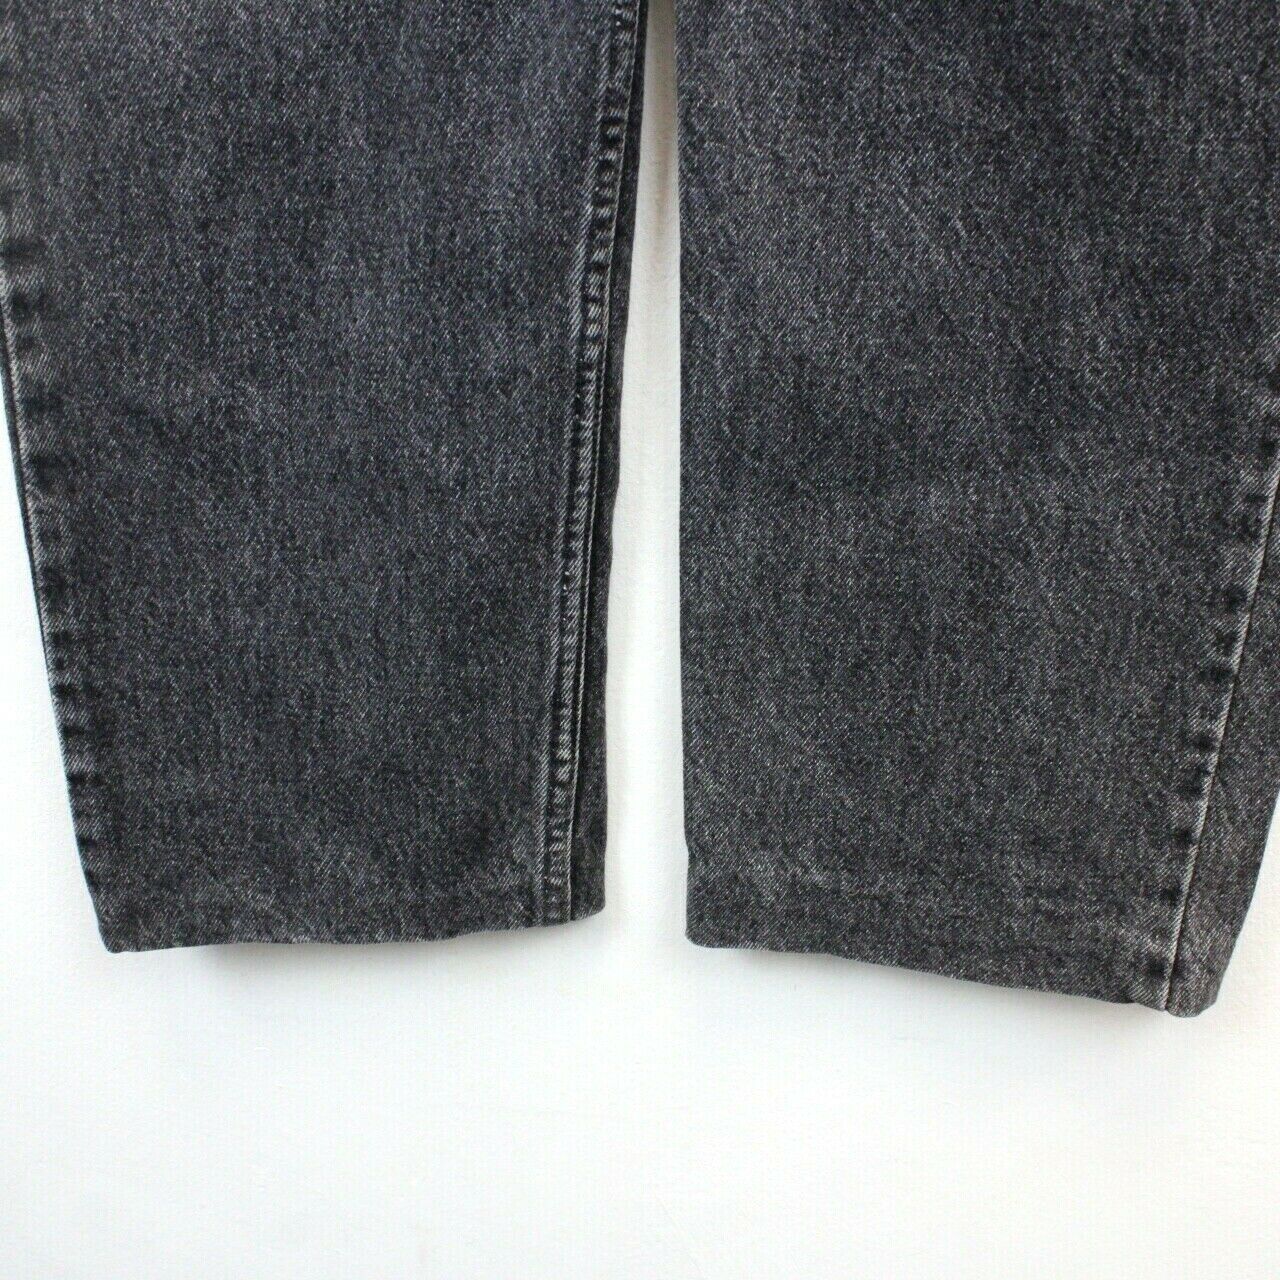 LEVIS 615 Jeans Black Charcoal | W36 L30